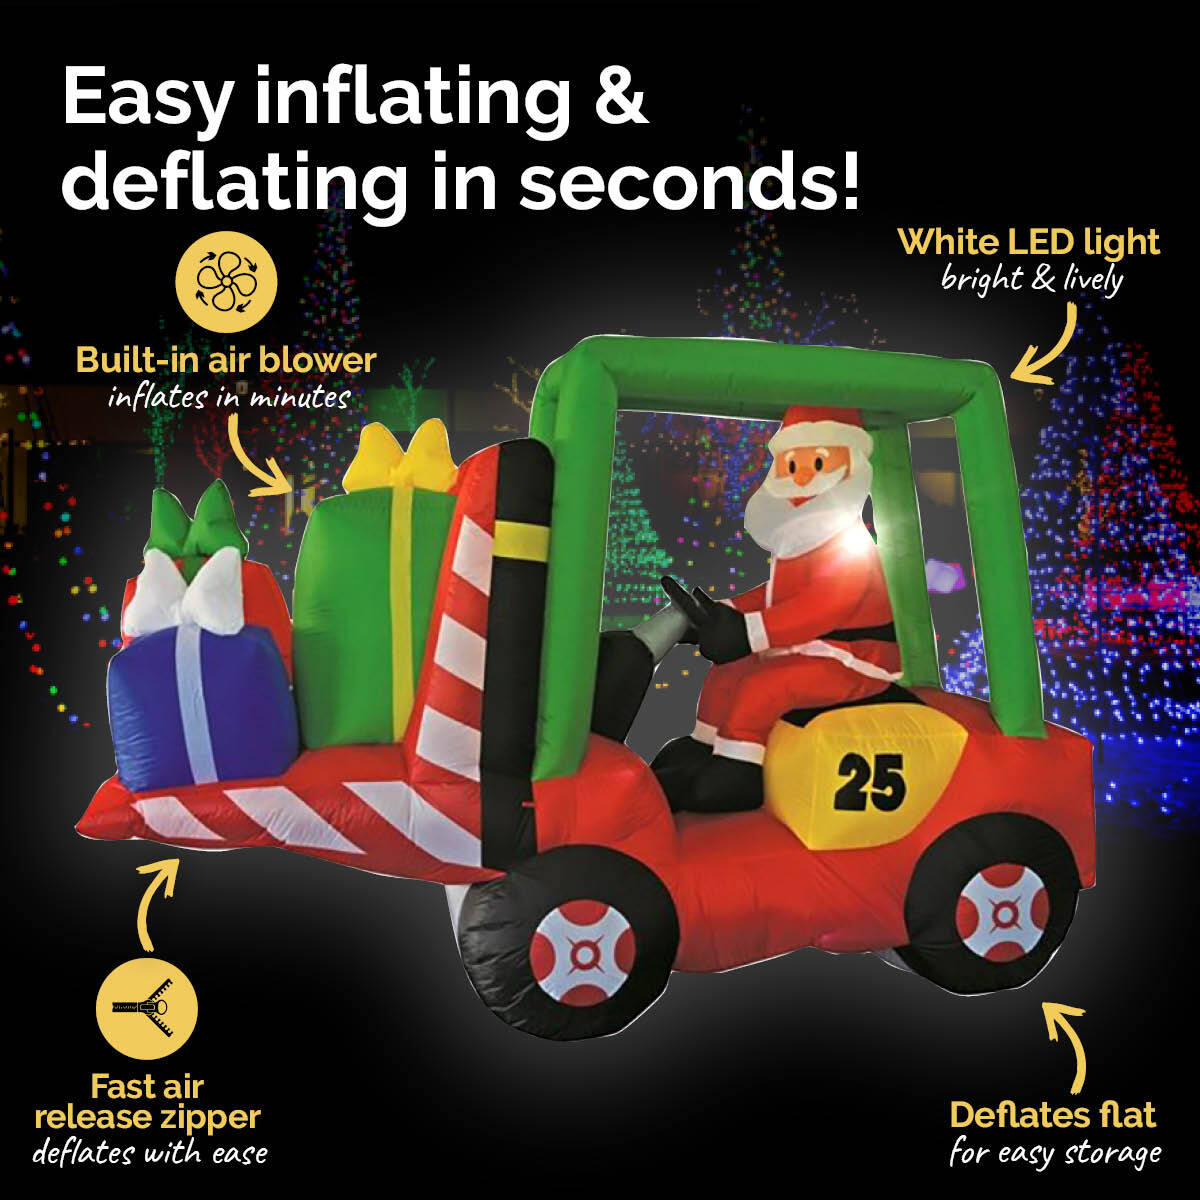 Christmas By Sas 2.4 x 1.8m Santa & Forklift Built-In Blower LED Lighting - Little Kids Business